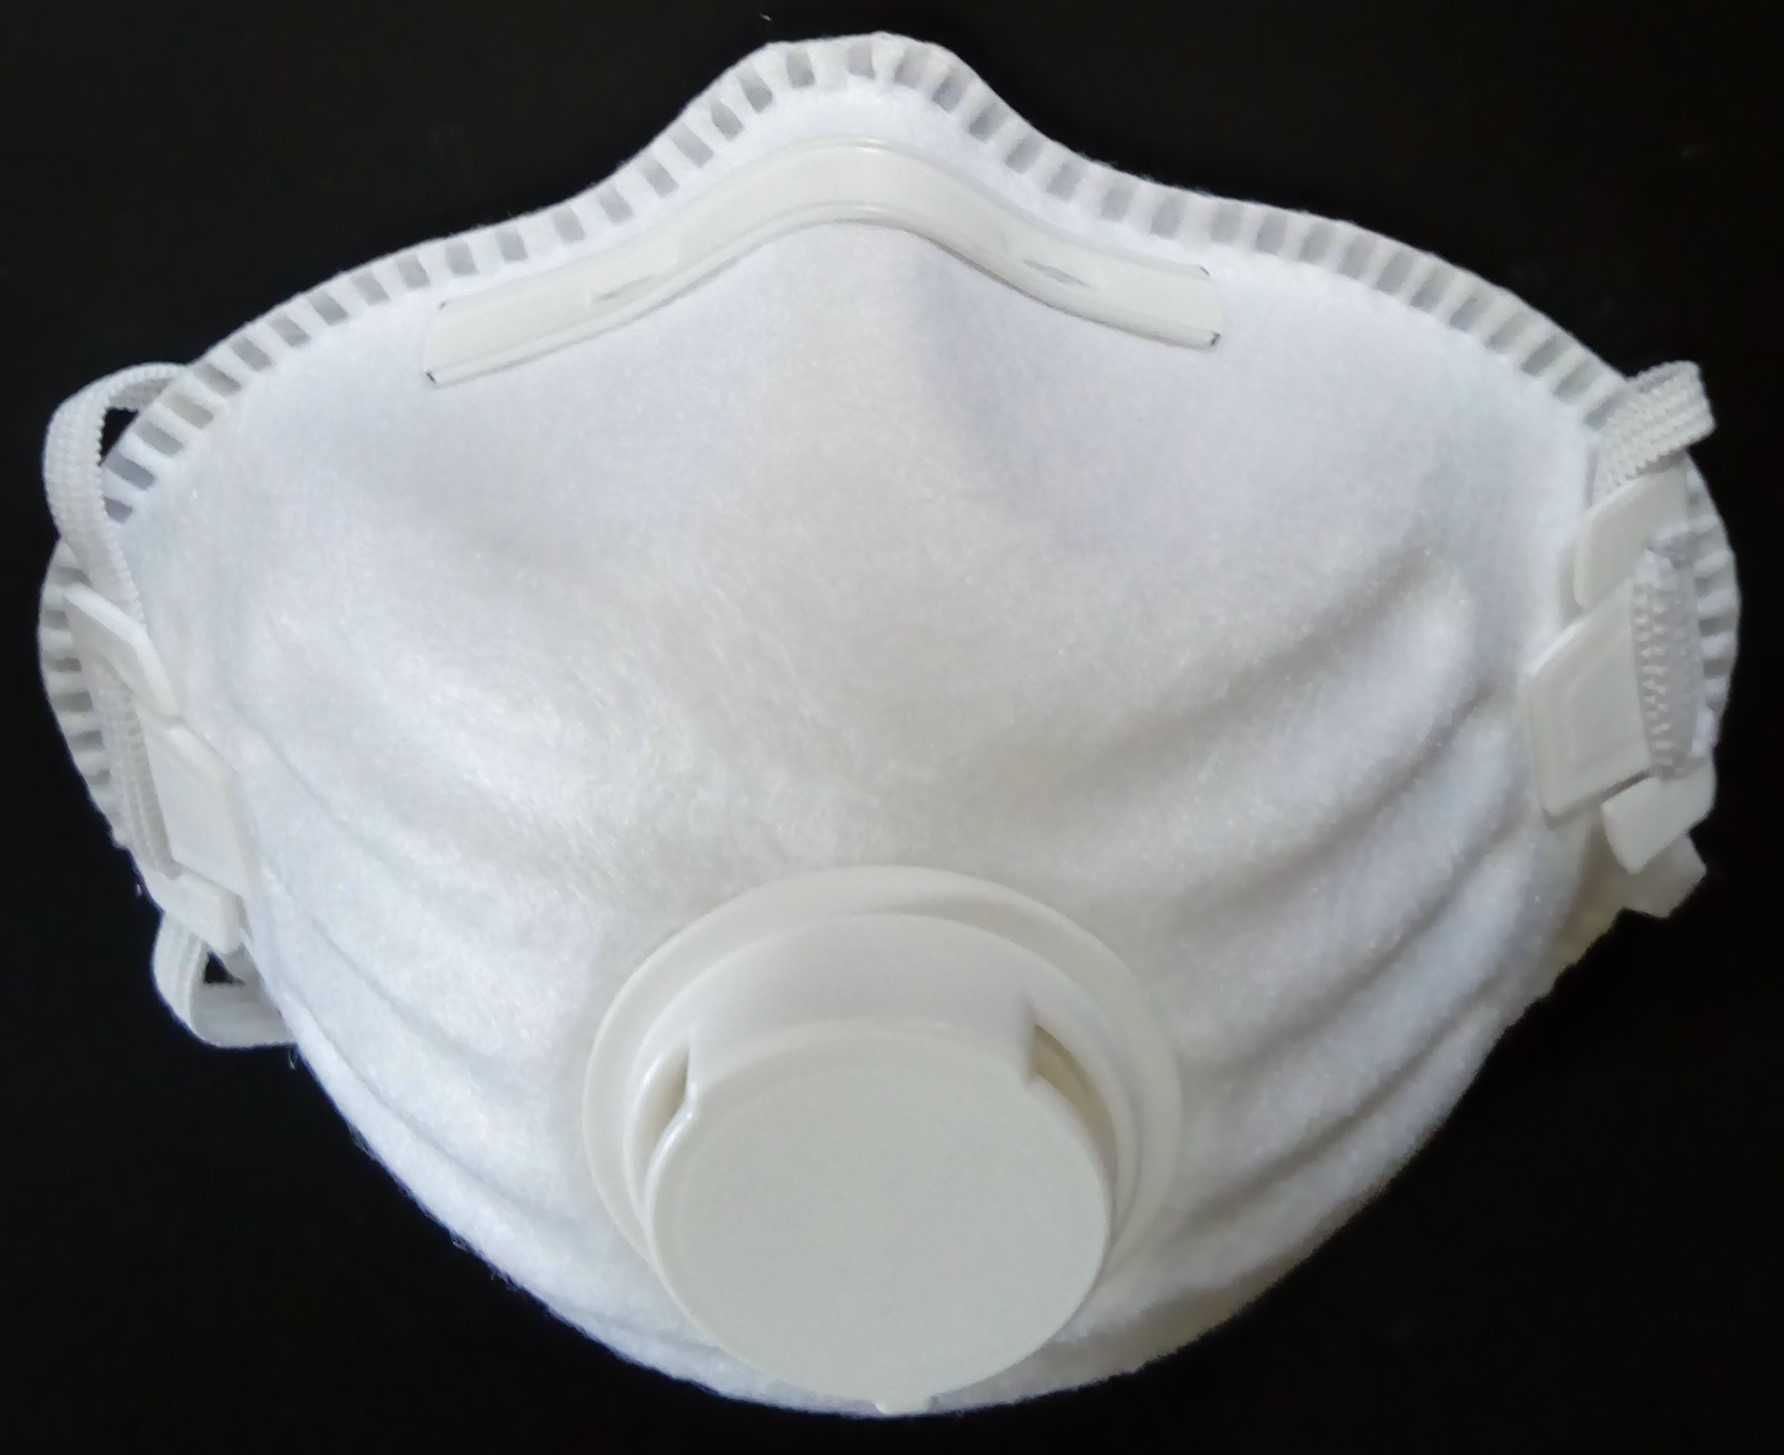 Máscaras FFP2 para indústria com válvula-Proteção respiratória 0.80€